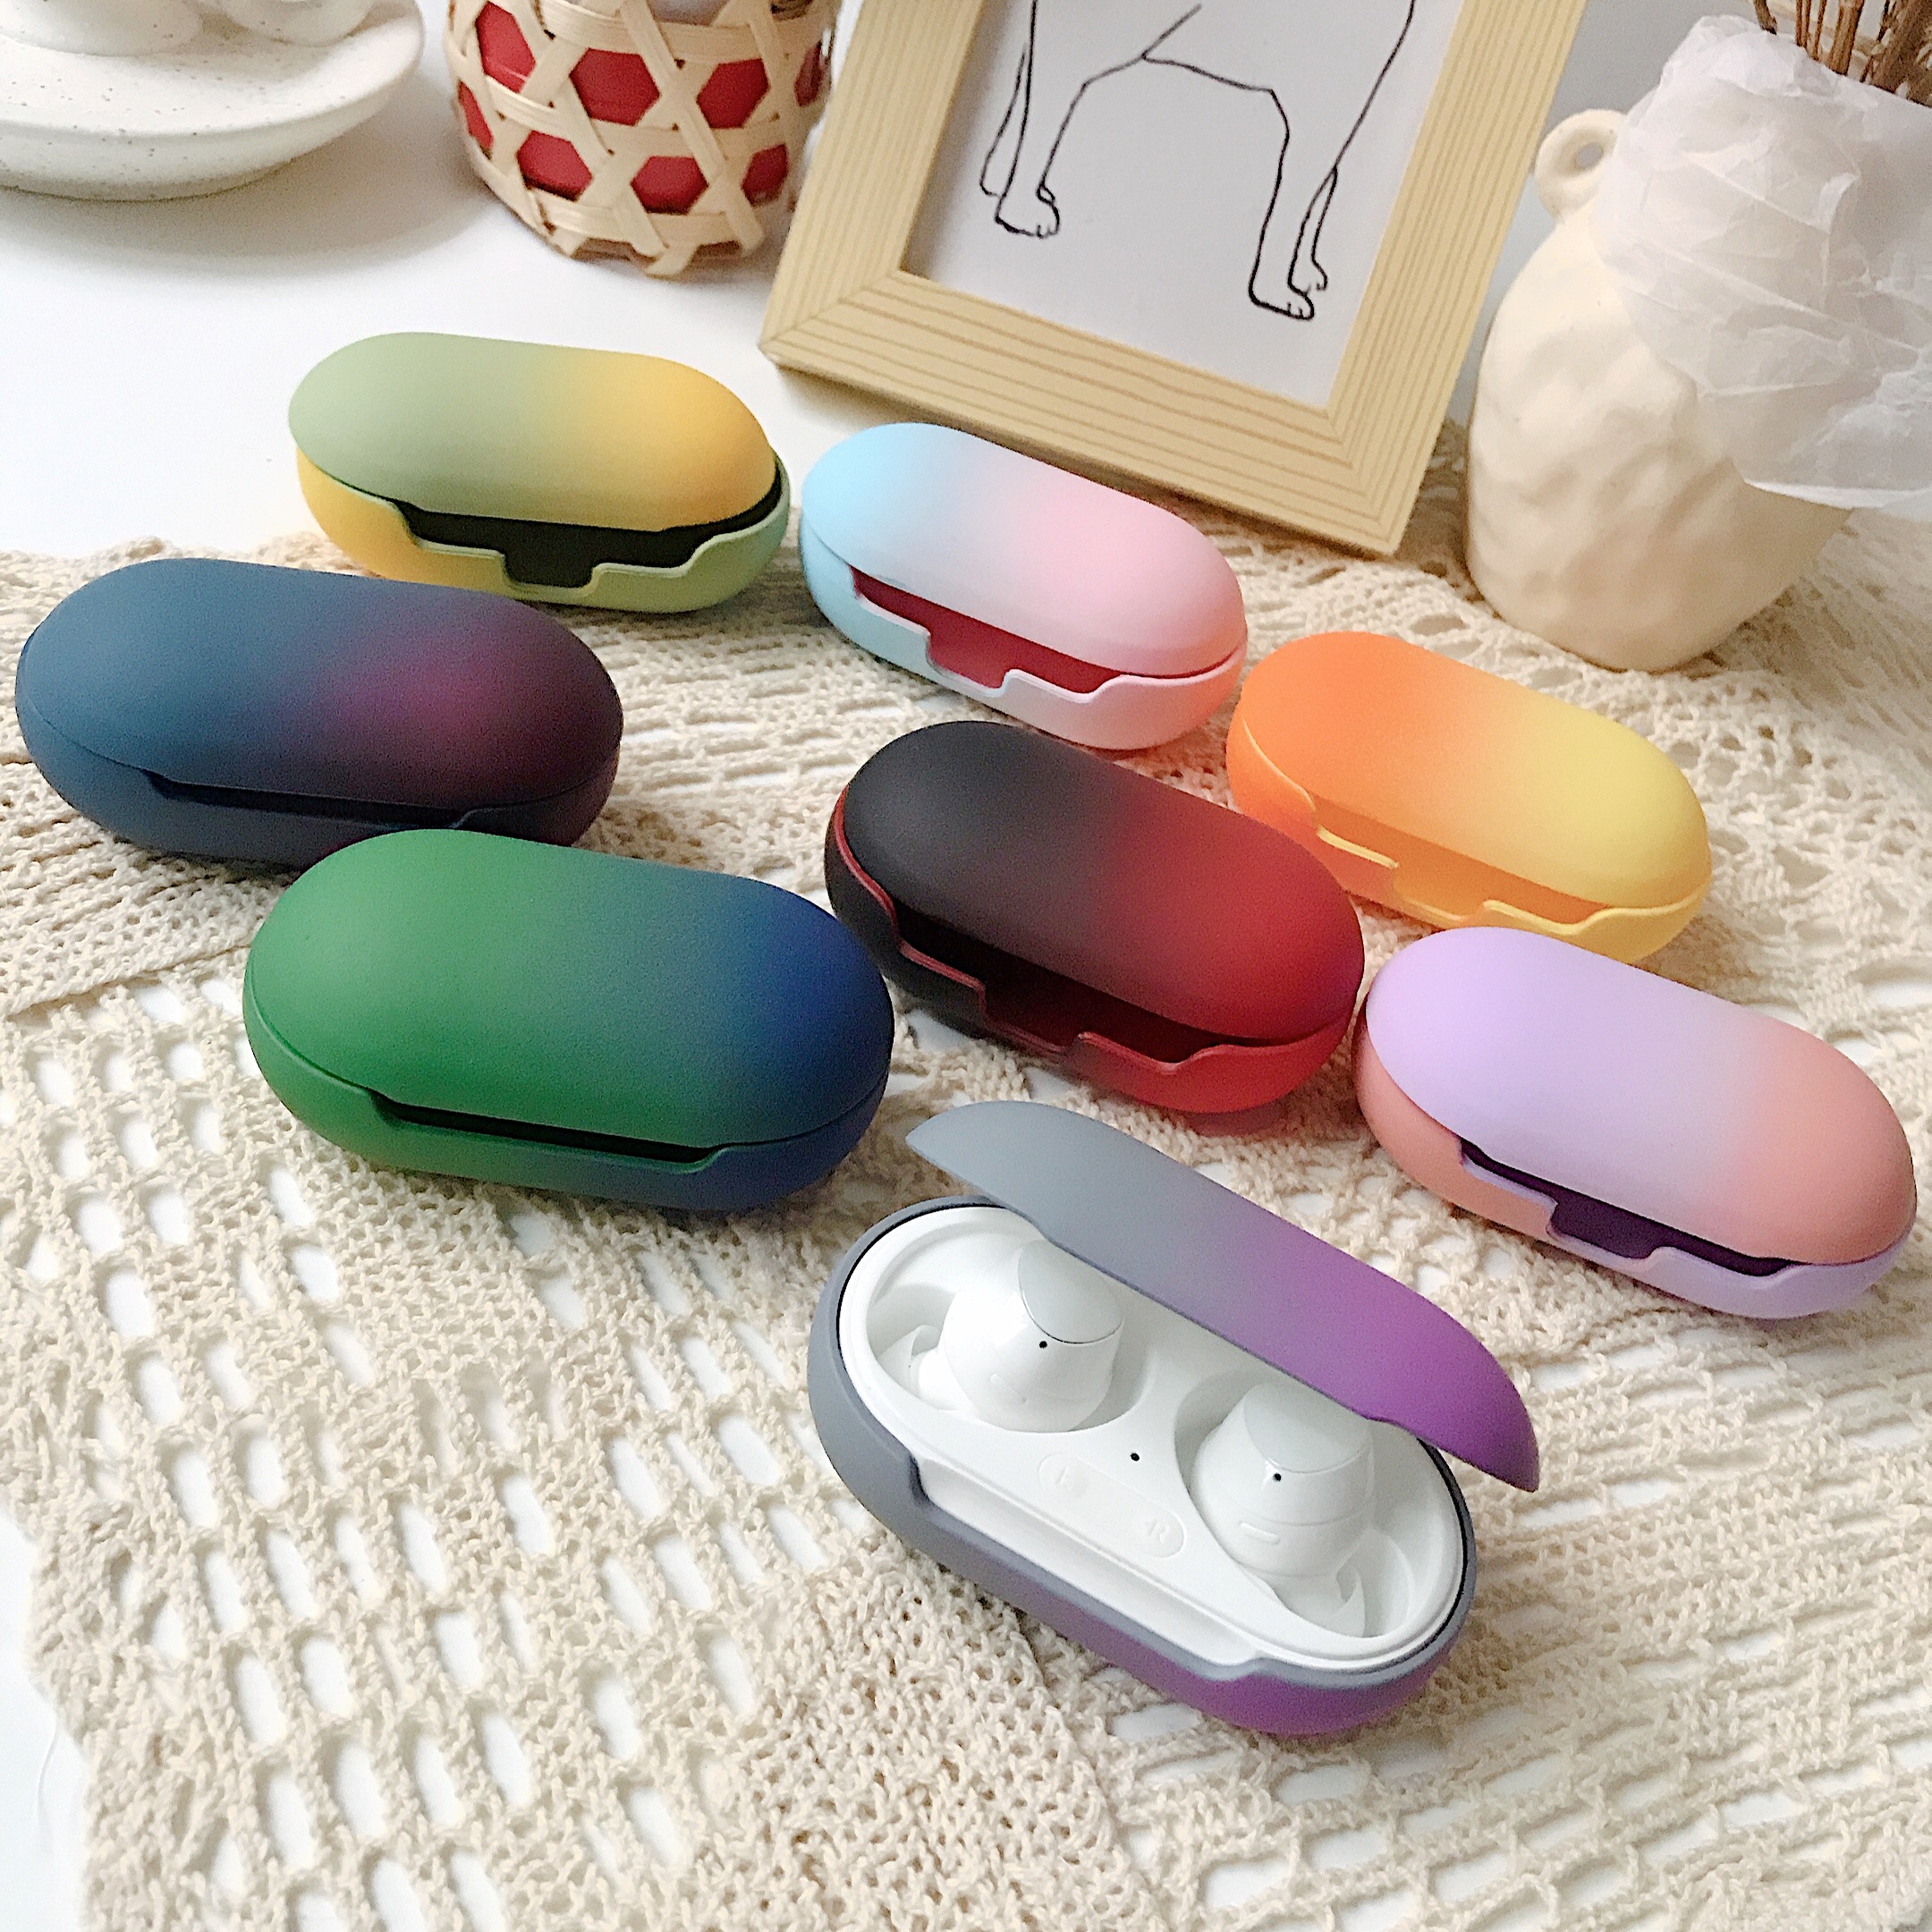 Vỏ bảo vệ hộp sạc tai nghe bằng silicon PC cứng chống sốc/ bụi nhiều màu sắc cho Samsung Galaxy Buds /Galaxy Buds Plus